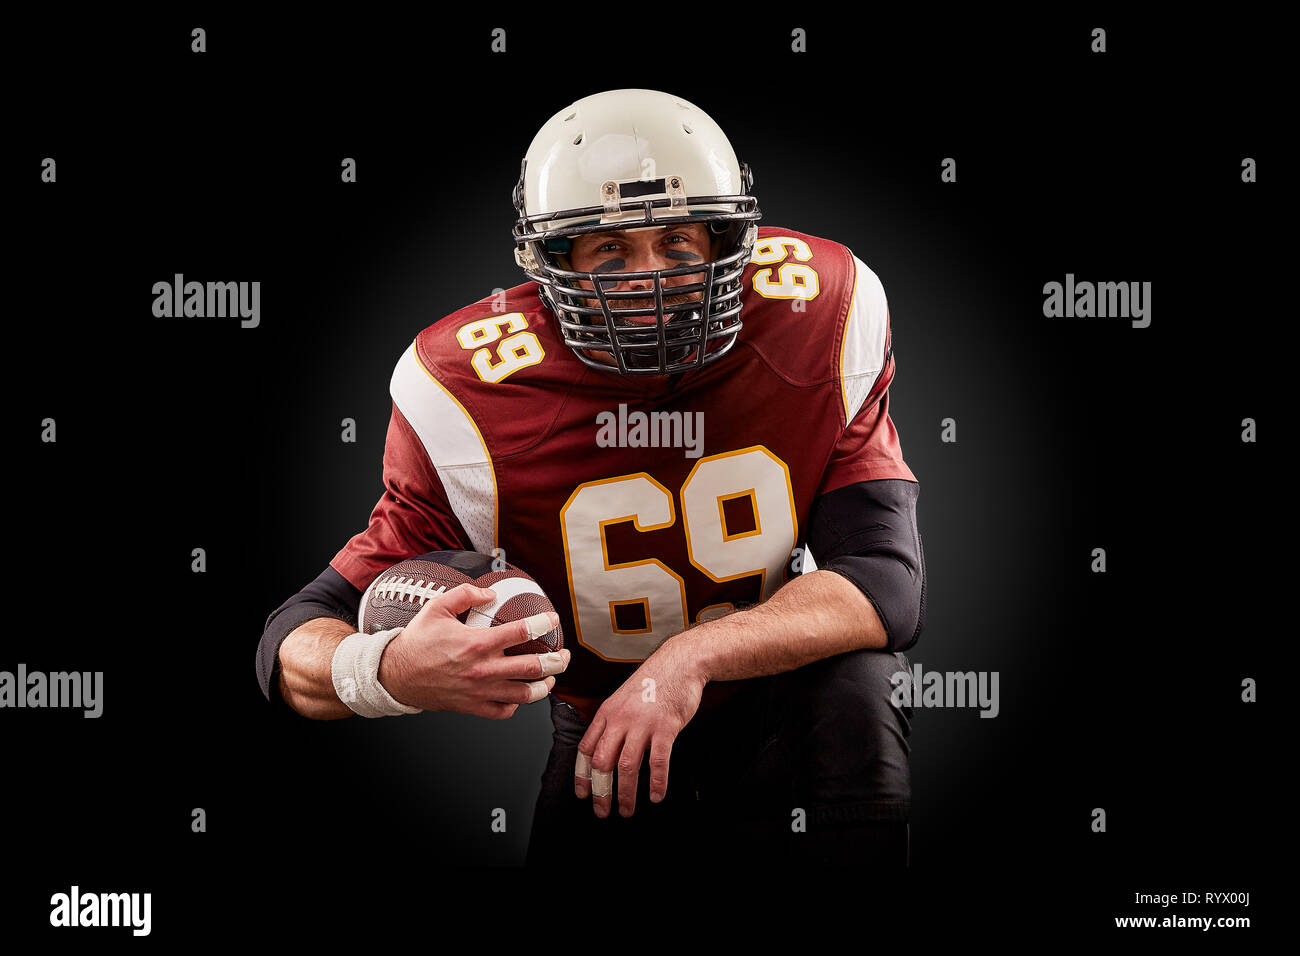 Portrait de joueur de football américain tenant une balle avec ses deux mains Banque D'Images